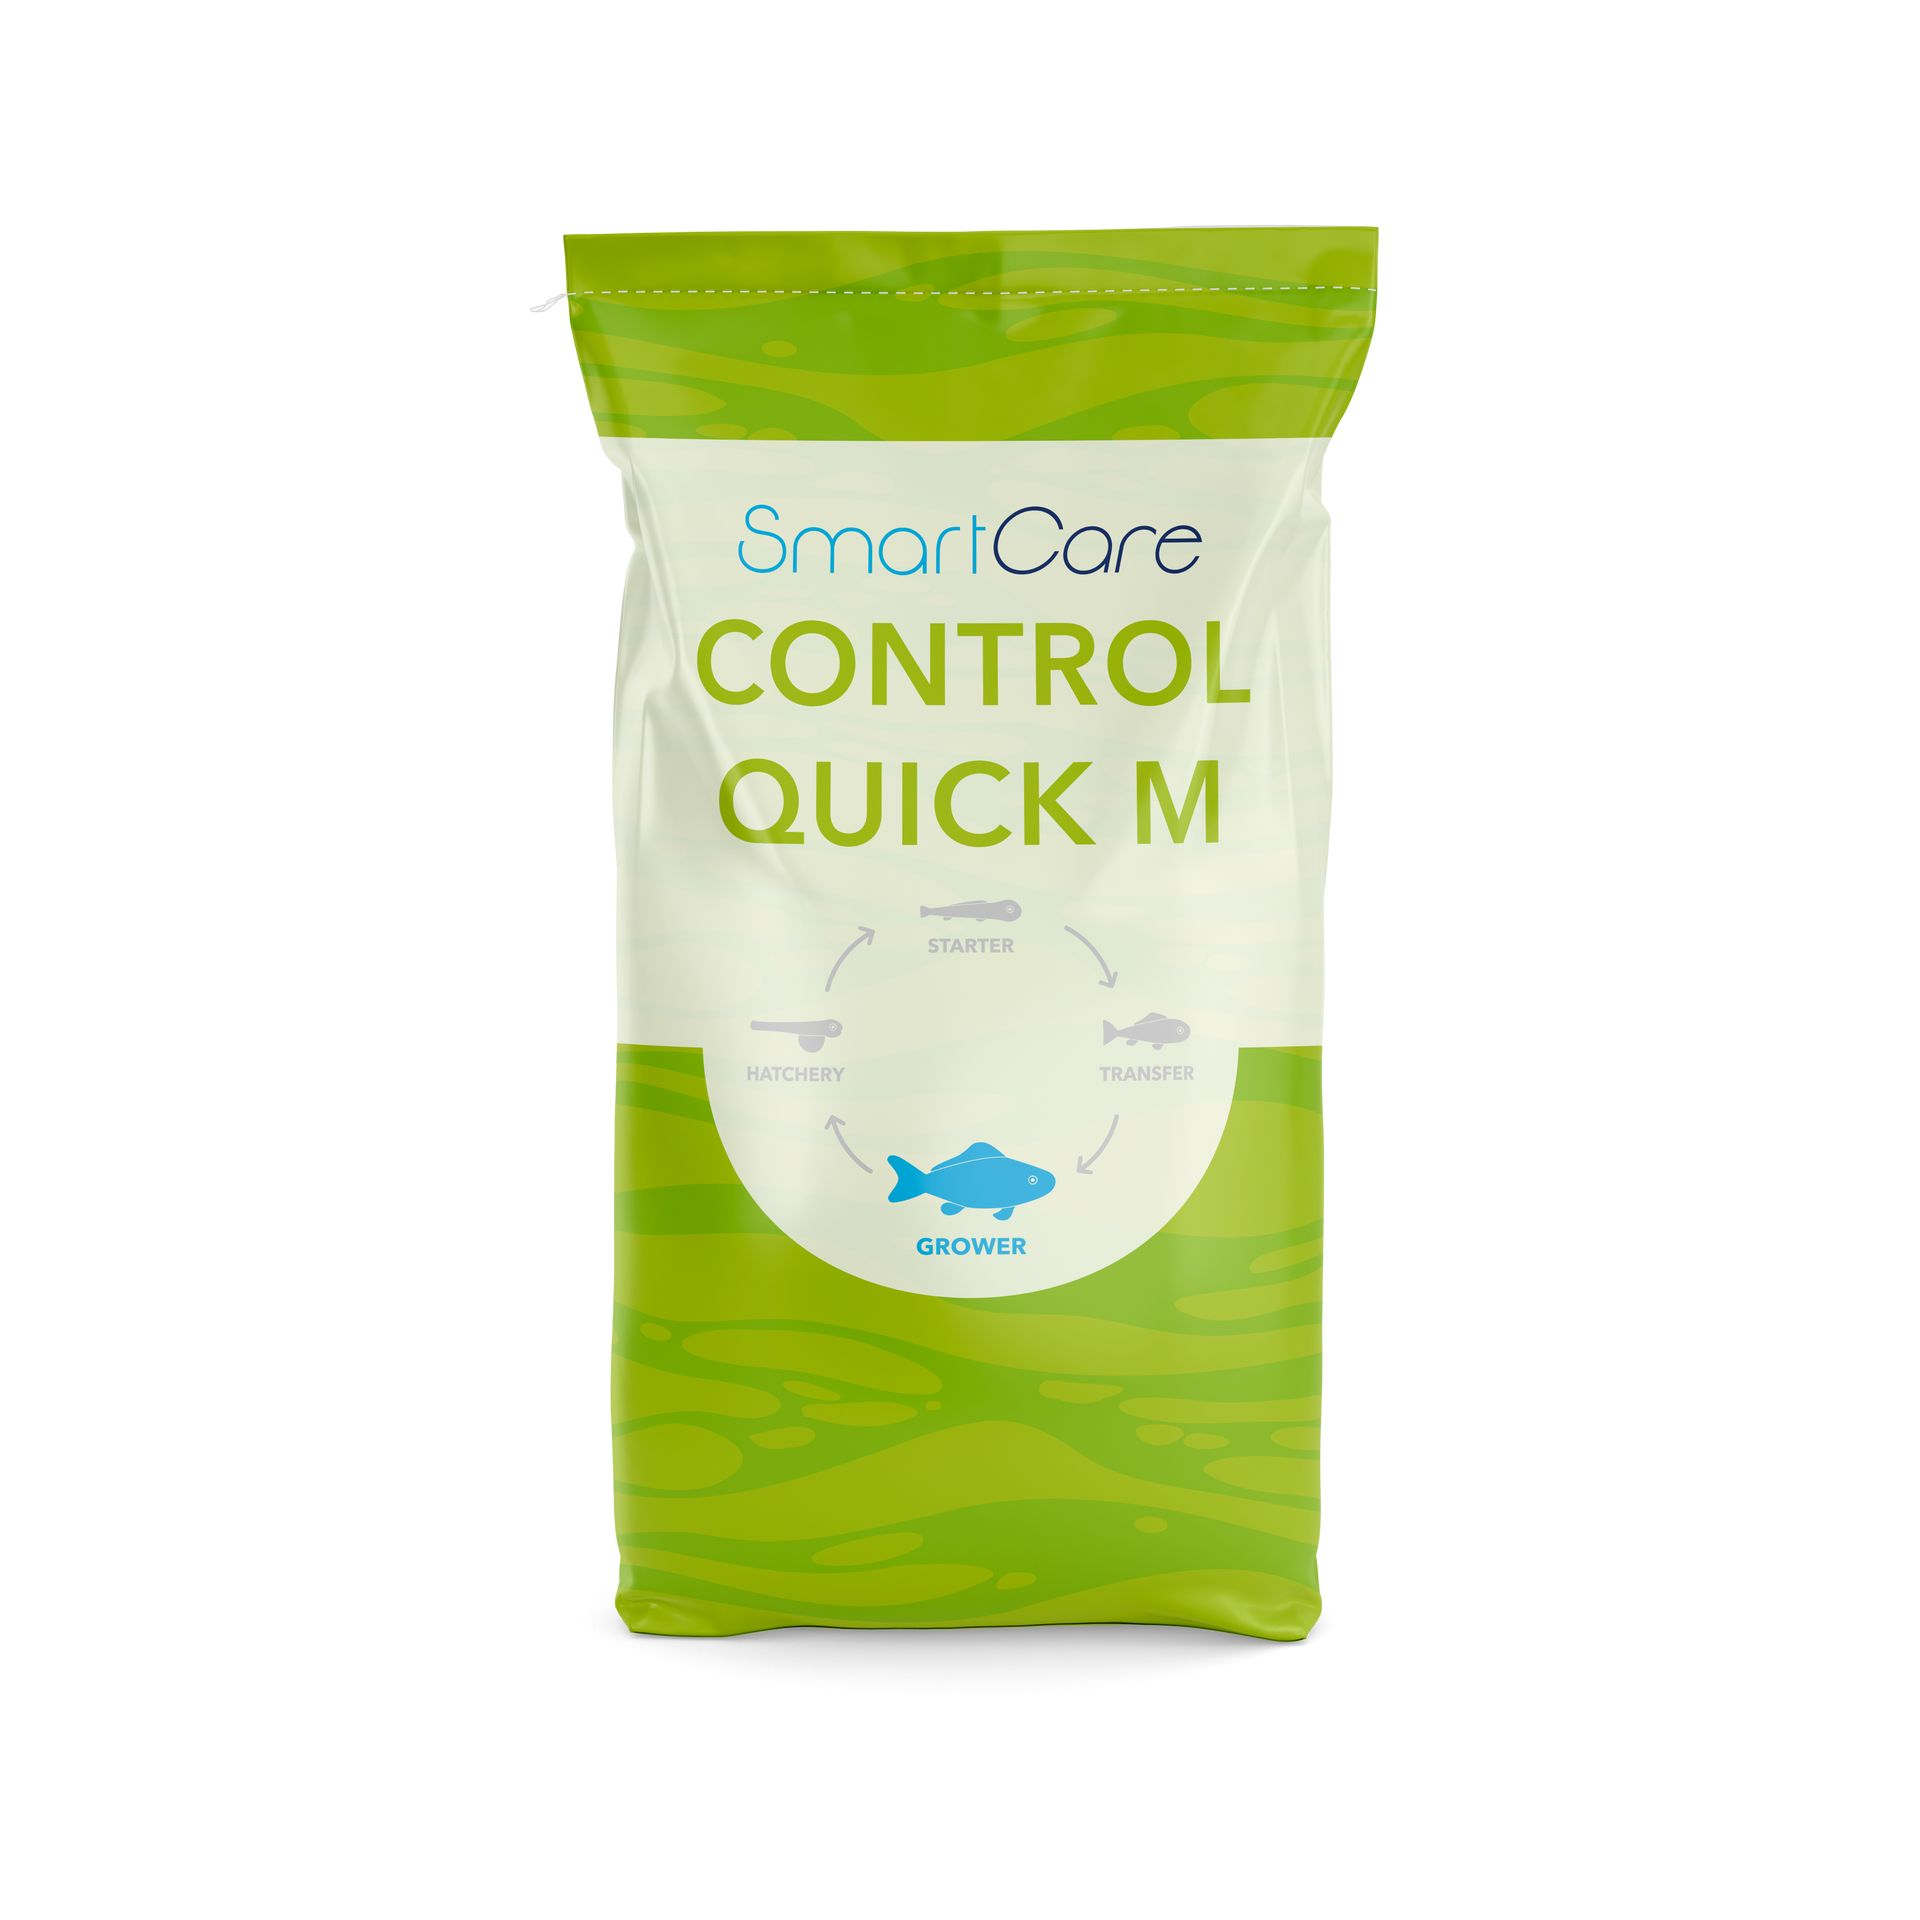 SmartCare Control Quick M health feed for salmon